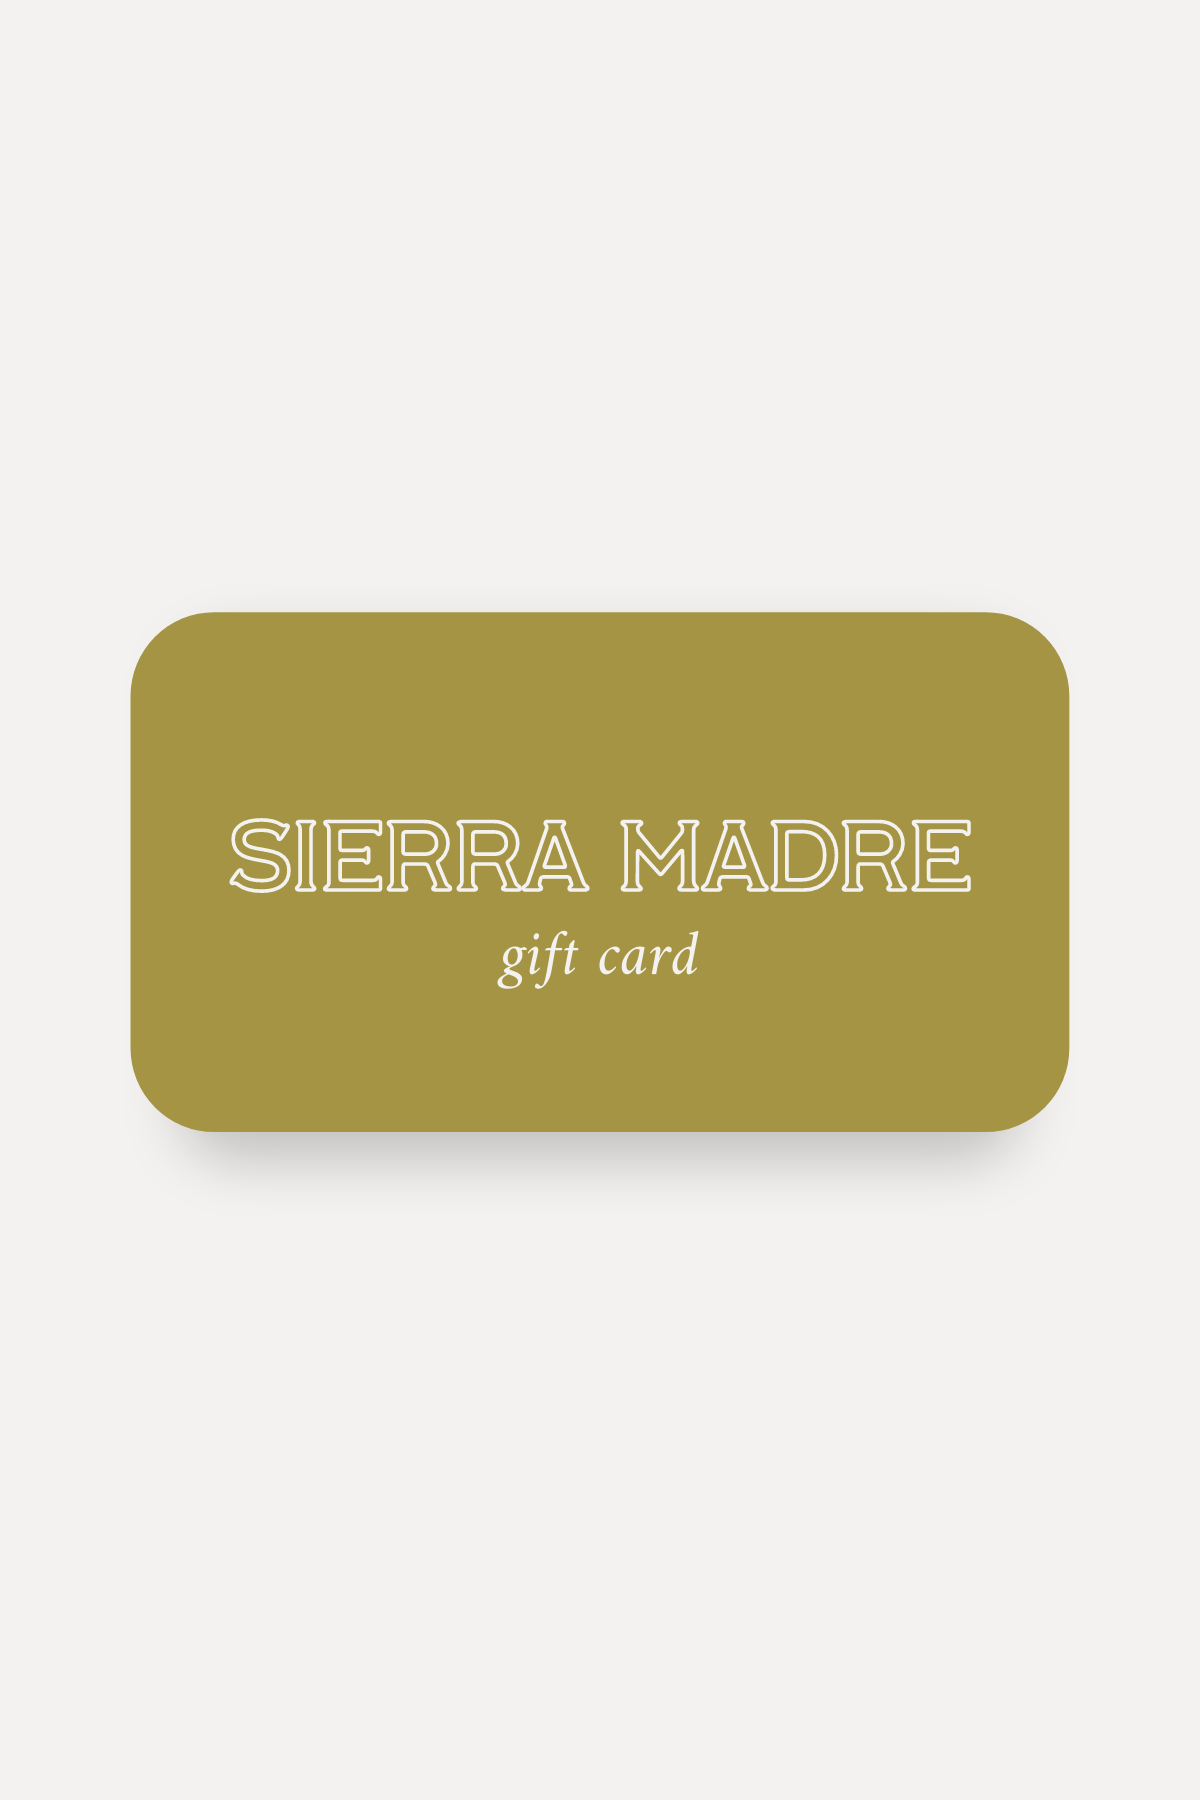 Sierra Gift Cards